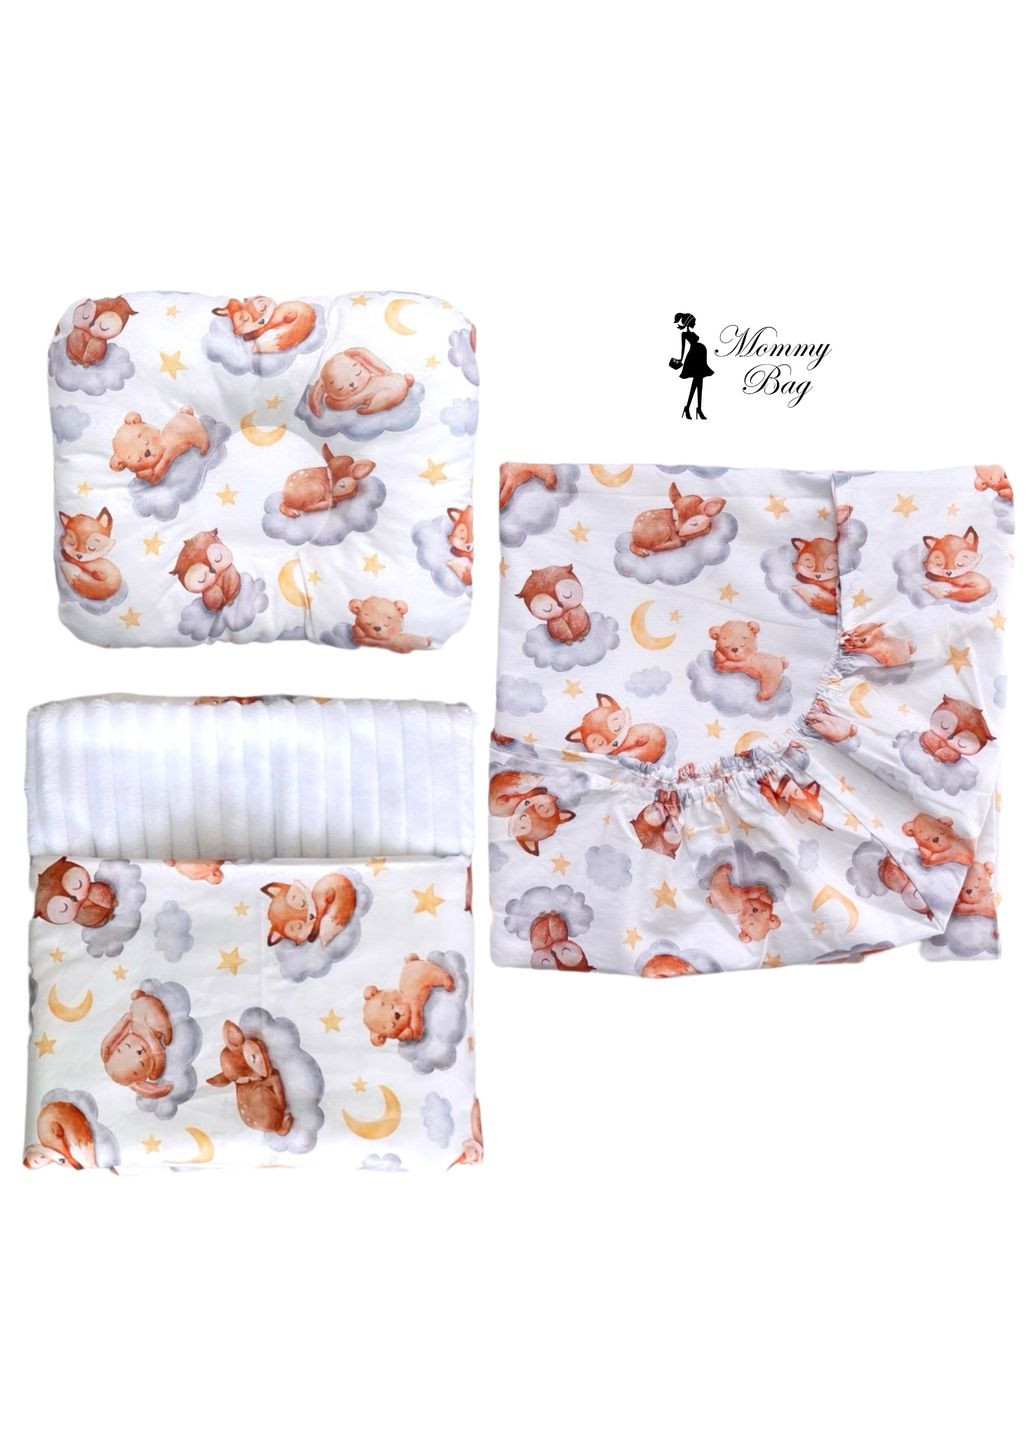 Набор 3в1 в детскую кроватку RoyalBaby – №25 Спящие зверьки с пледом Mommy Bag (285720538)